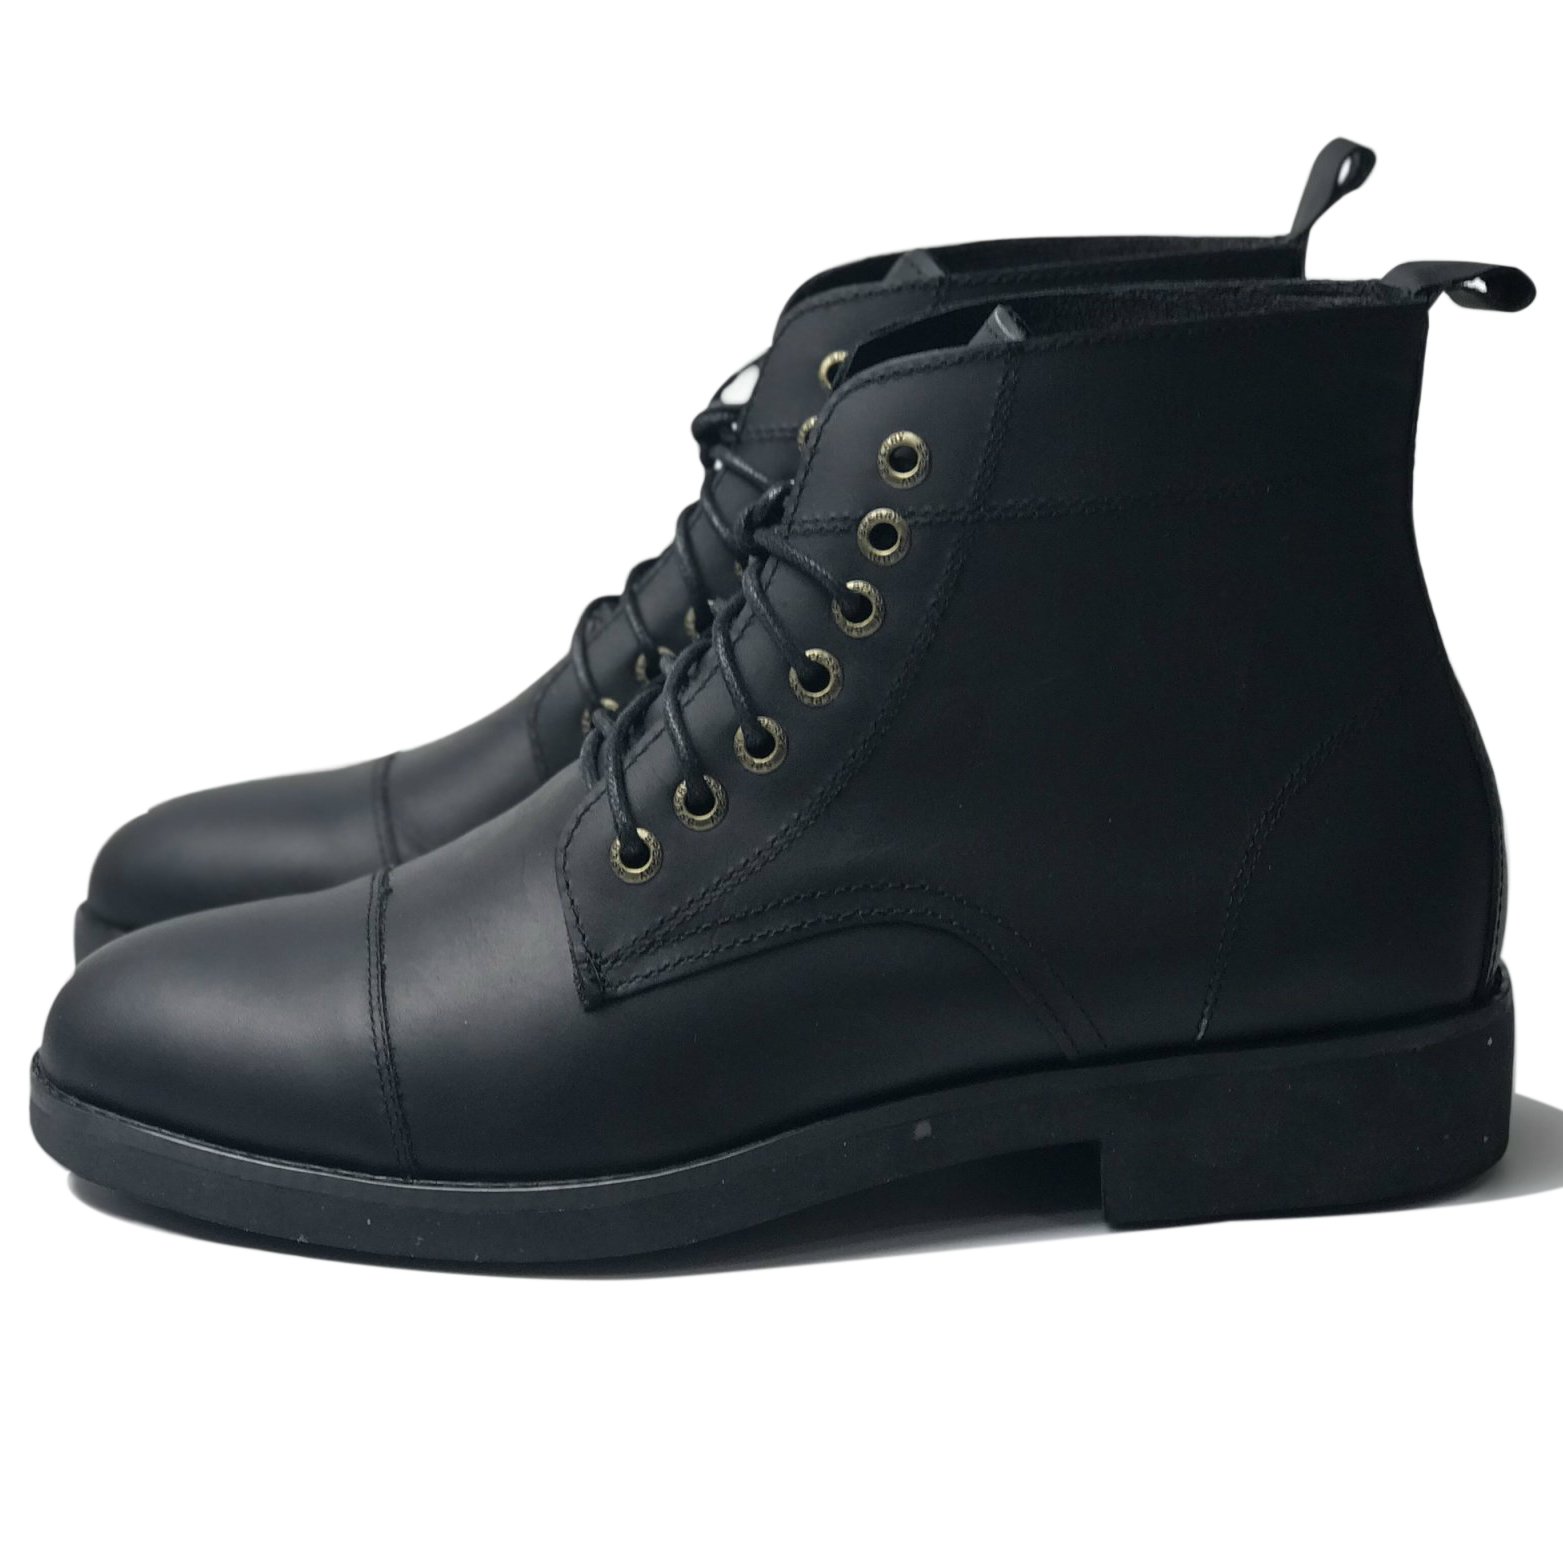 Giày cao cổ Vanguard Boots MAD Black nam da bò sáp ngựa điên cao cấp chất lượng tốt giá rẻ tại hà nội